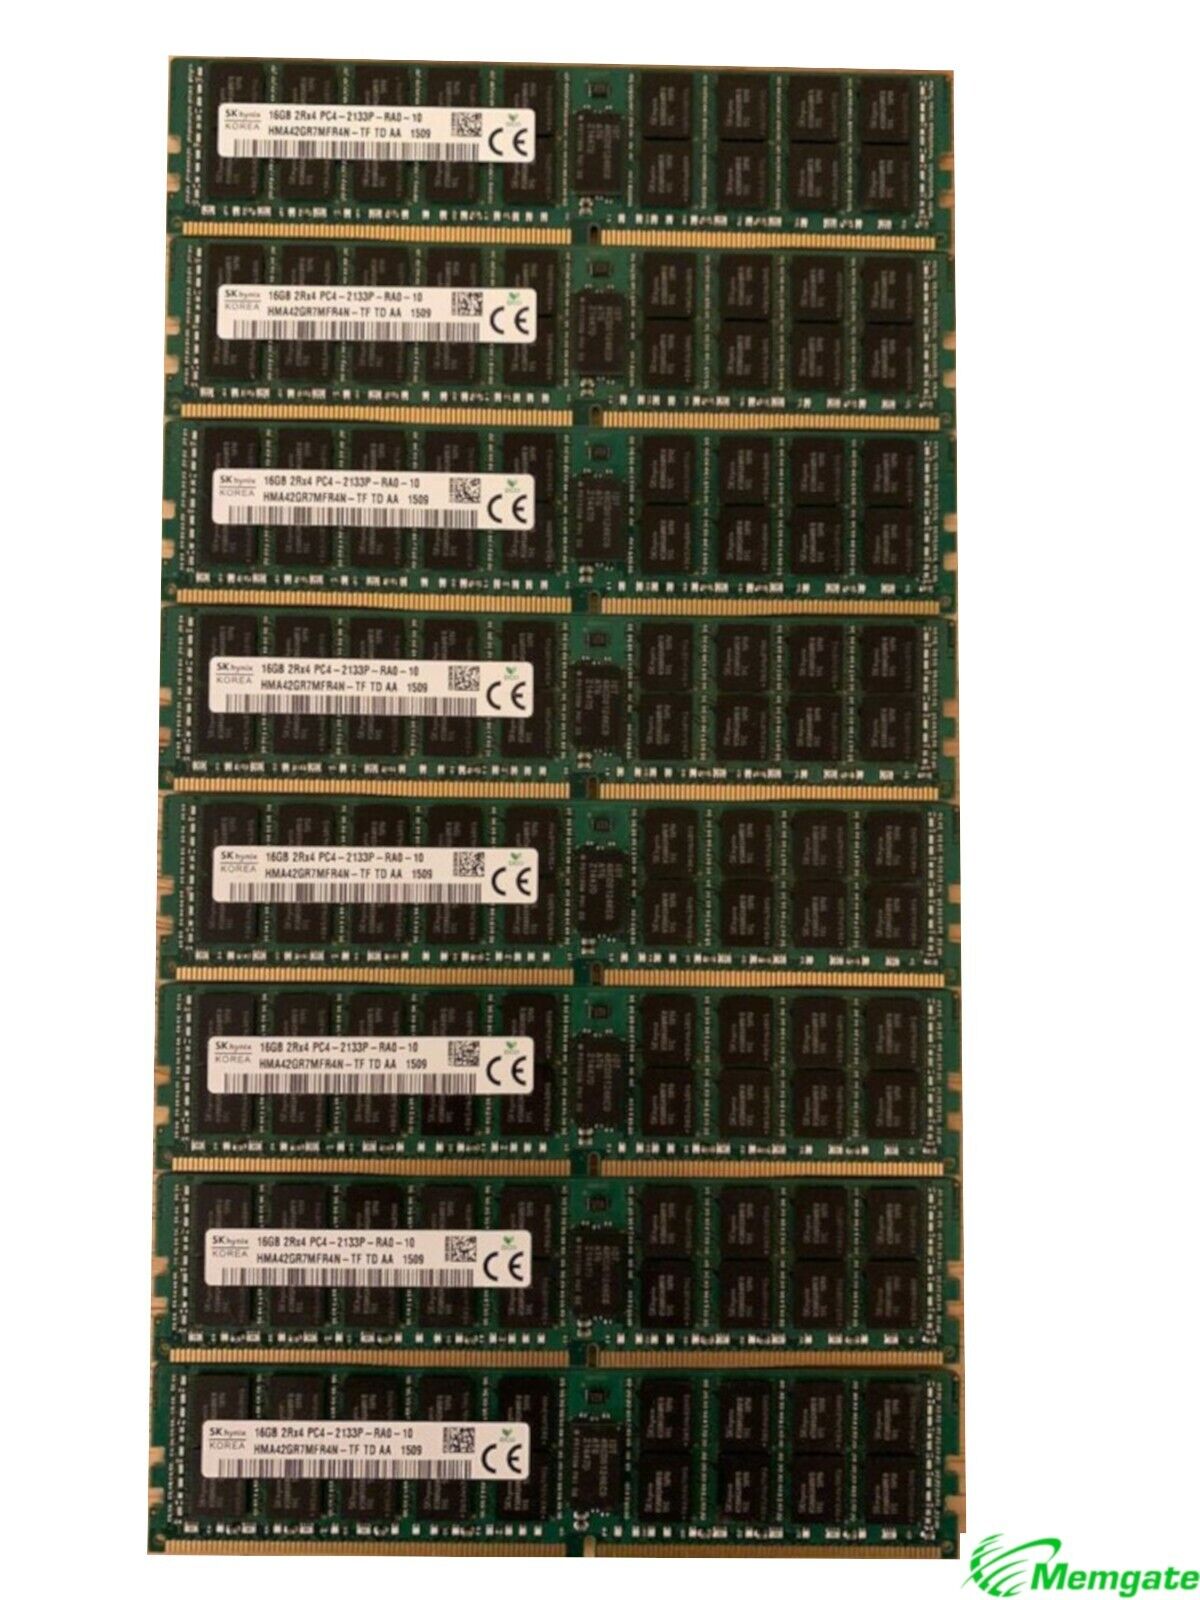 96GB (6x16GB) PC4-17000P-R DDR4 2133P ECC RDIMM Memory for Dell PowerEdge R630